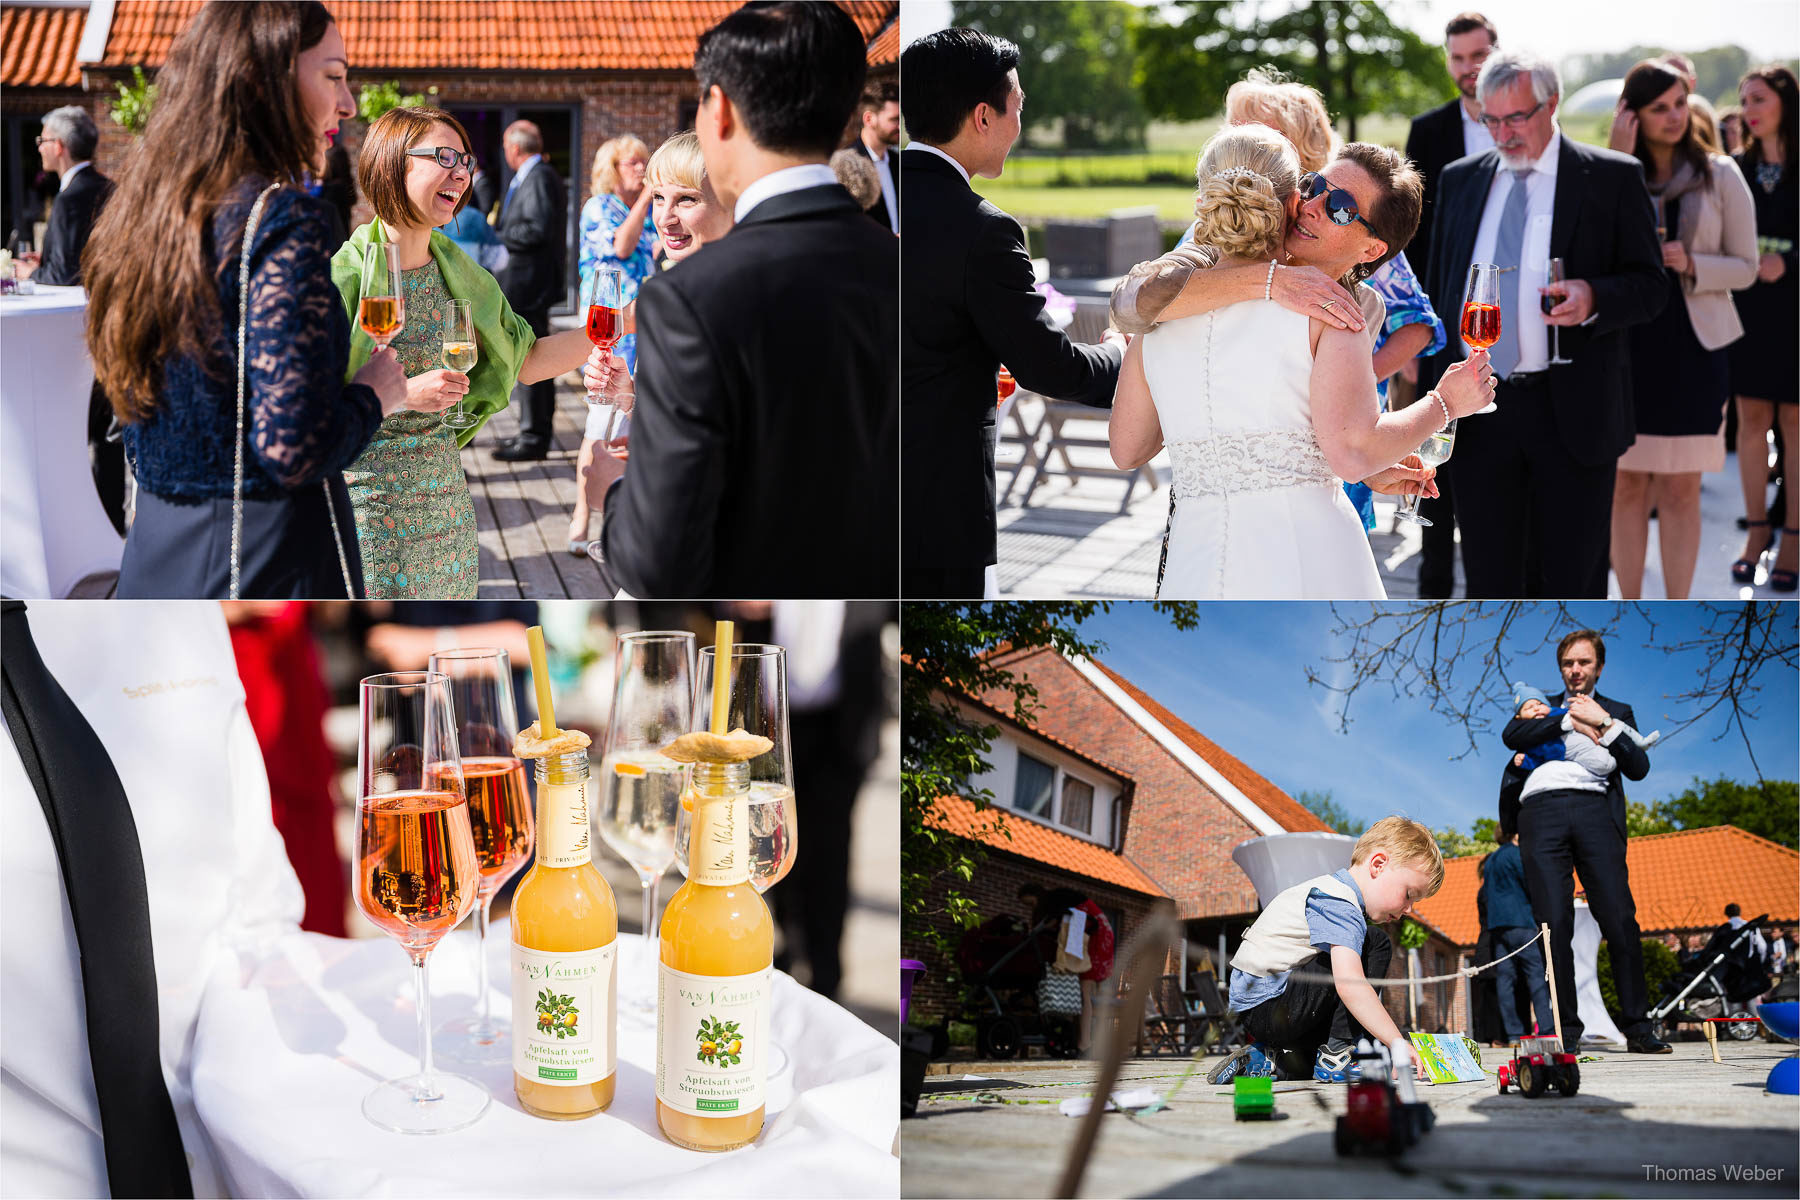 Freie Trauung in der Eventscheune St. Georg in Rastede, Hochzeitsfotograf Ostfriesland